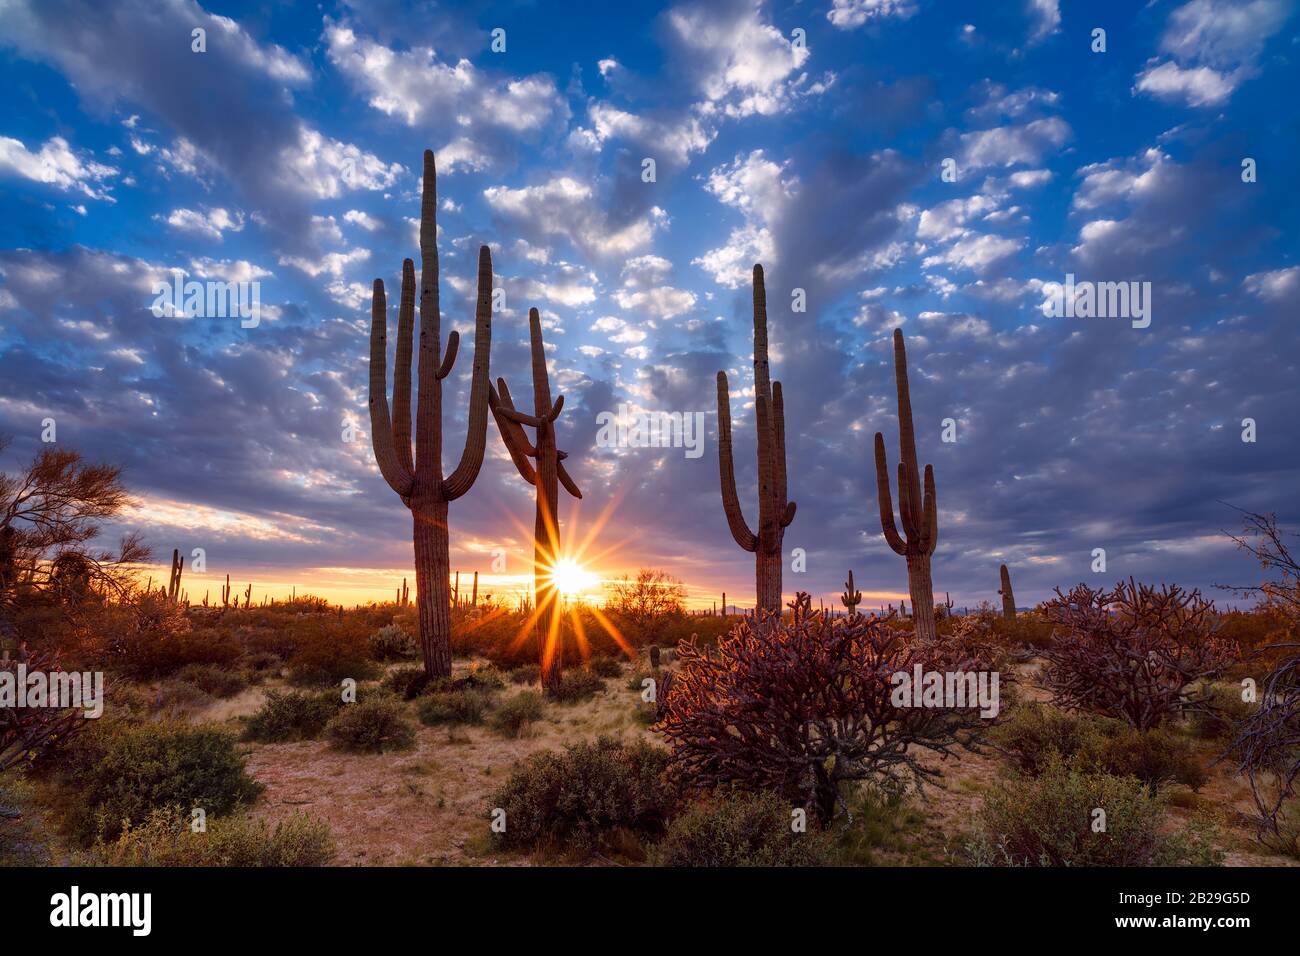 Paysage pittoresque du désert de l'Arizona avec cactus Saguaro au coucher du soleil Banque D'Images